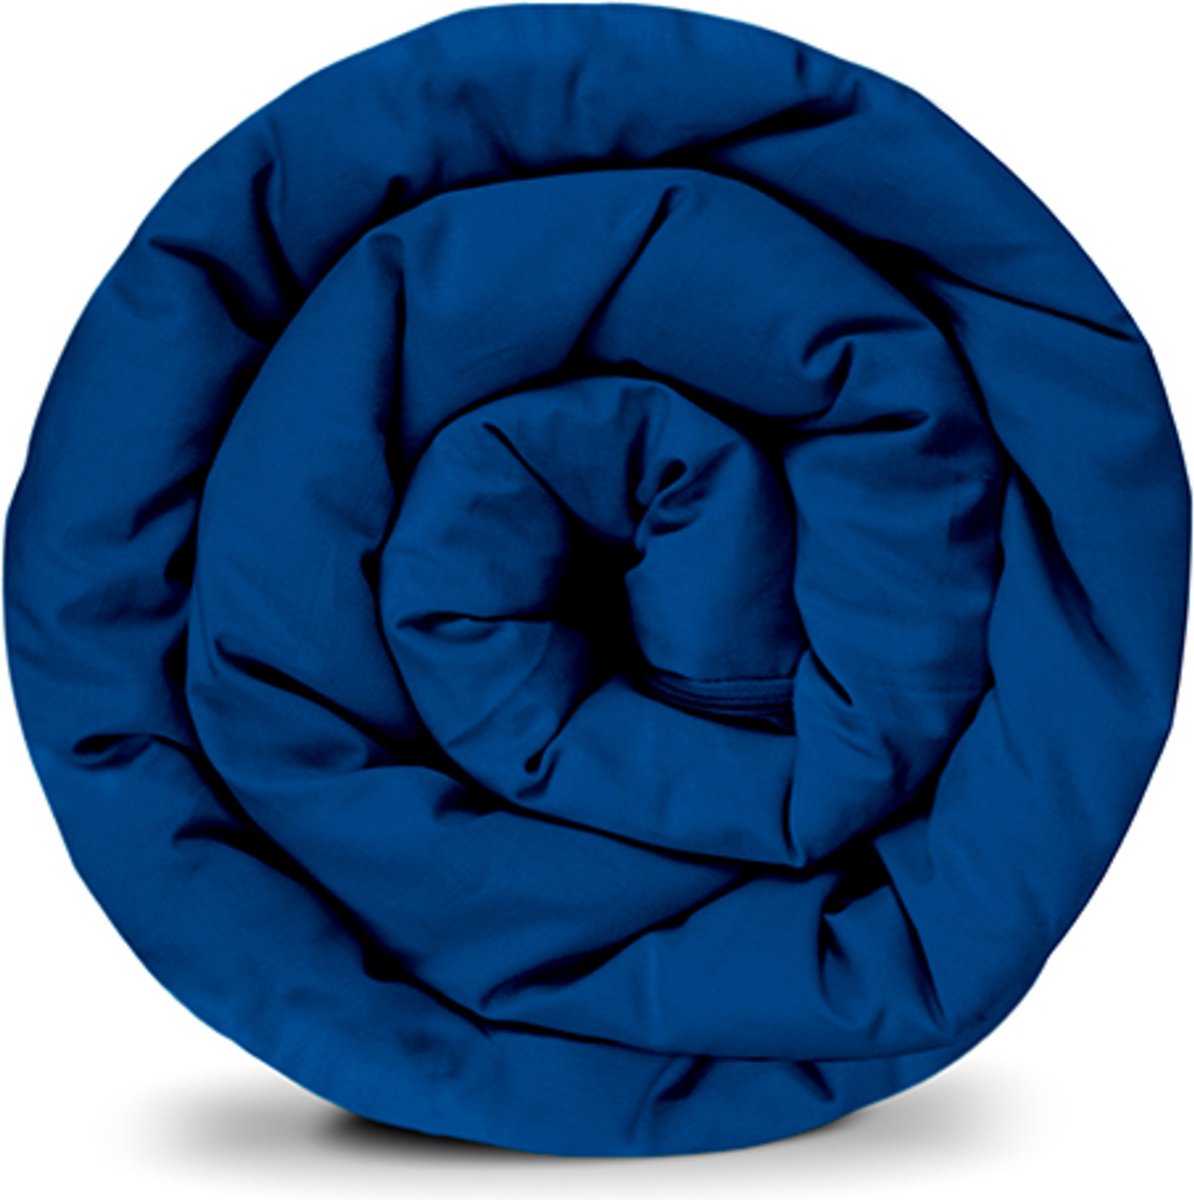 BALANCE weighted blanket cover in blauw katoen ritssysteem zomerhoes voor volwassenen/adolescenten voor een betere slaap afmeting: 135x200 cm